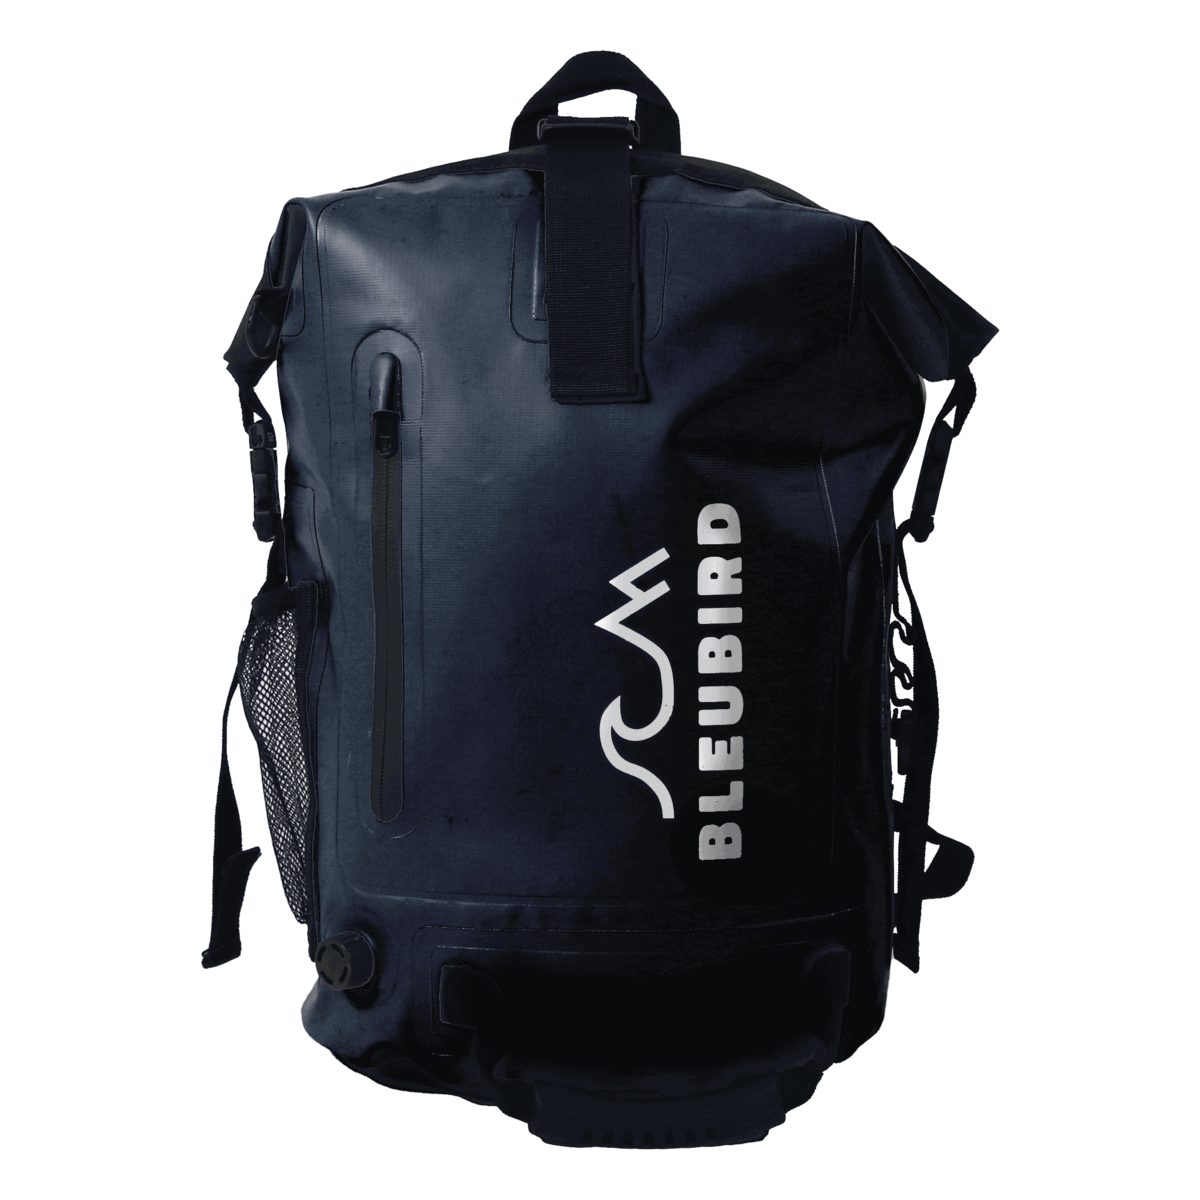 Drybag Backpack 40L - Olive